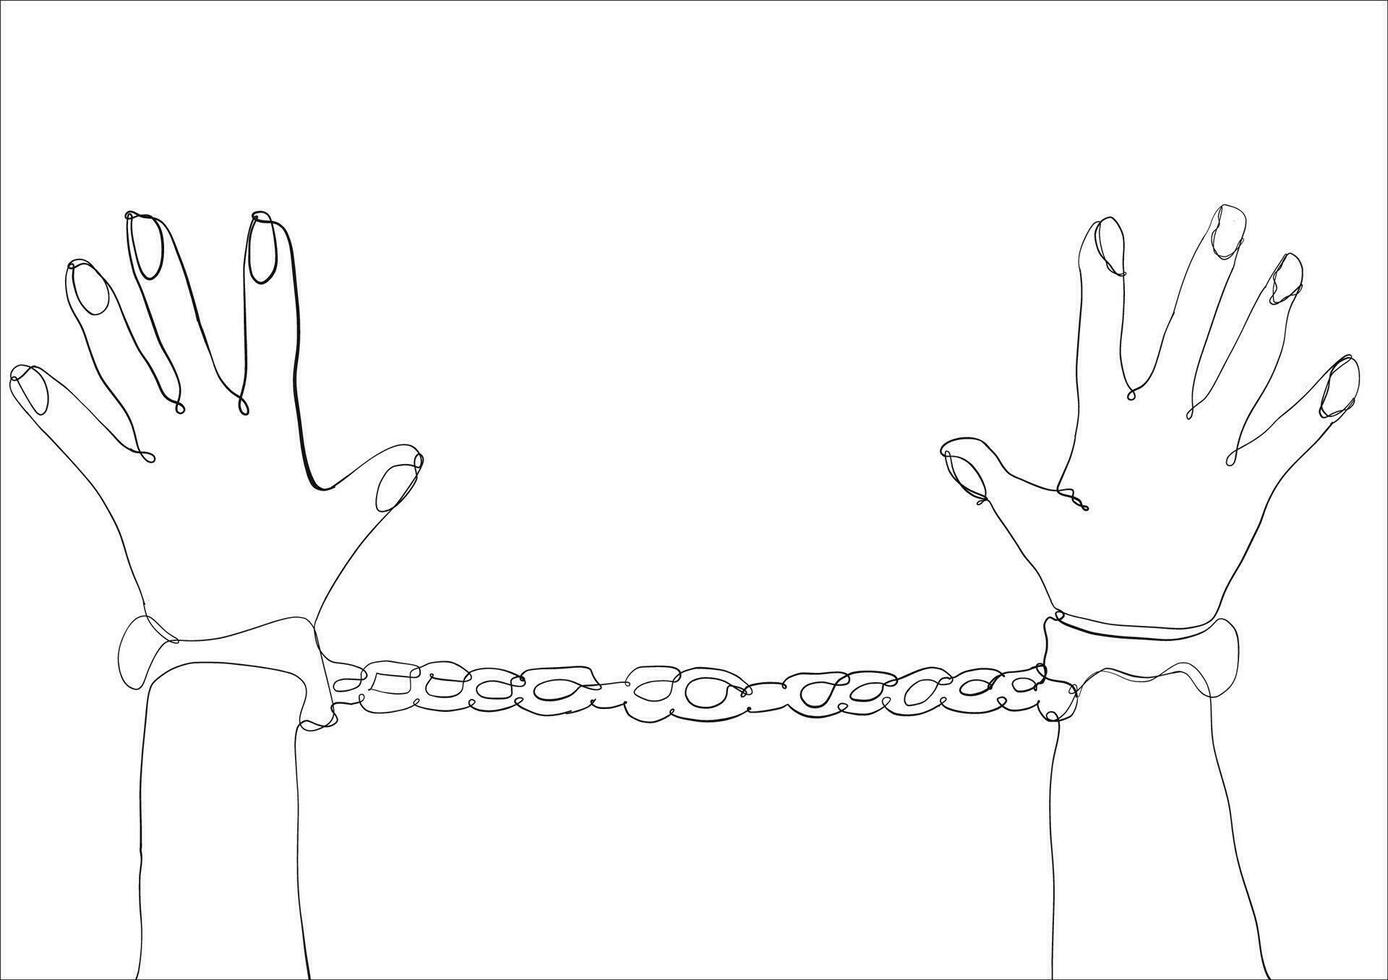 kontinuierlich Linie Zeichnung von Mann im Handschellen mit mit Handschellen gefesselt Hände hinter zurück im Gefängnis. vektor